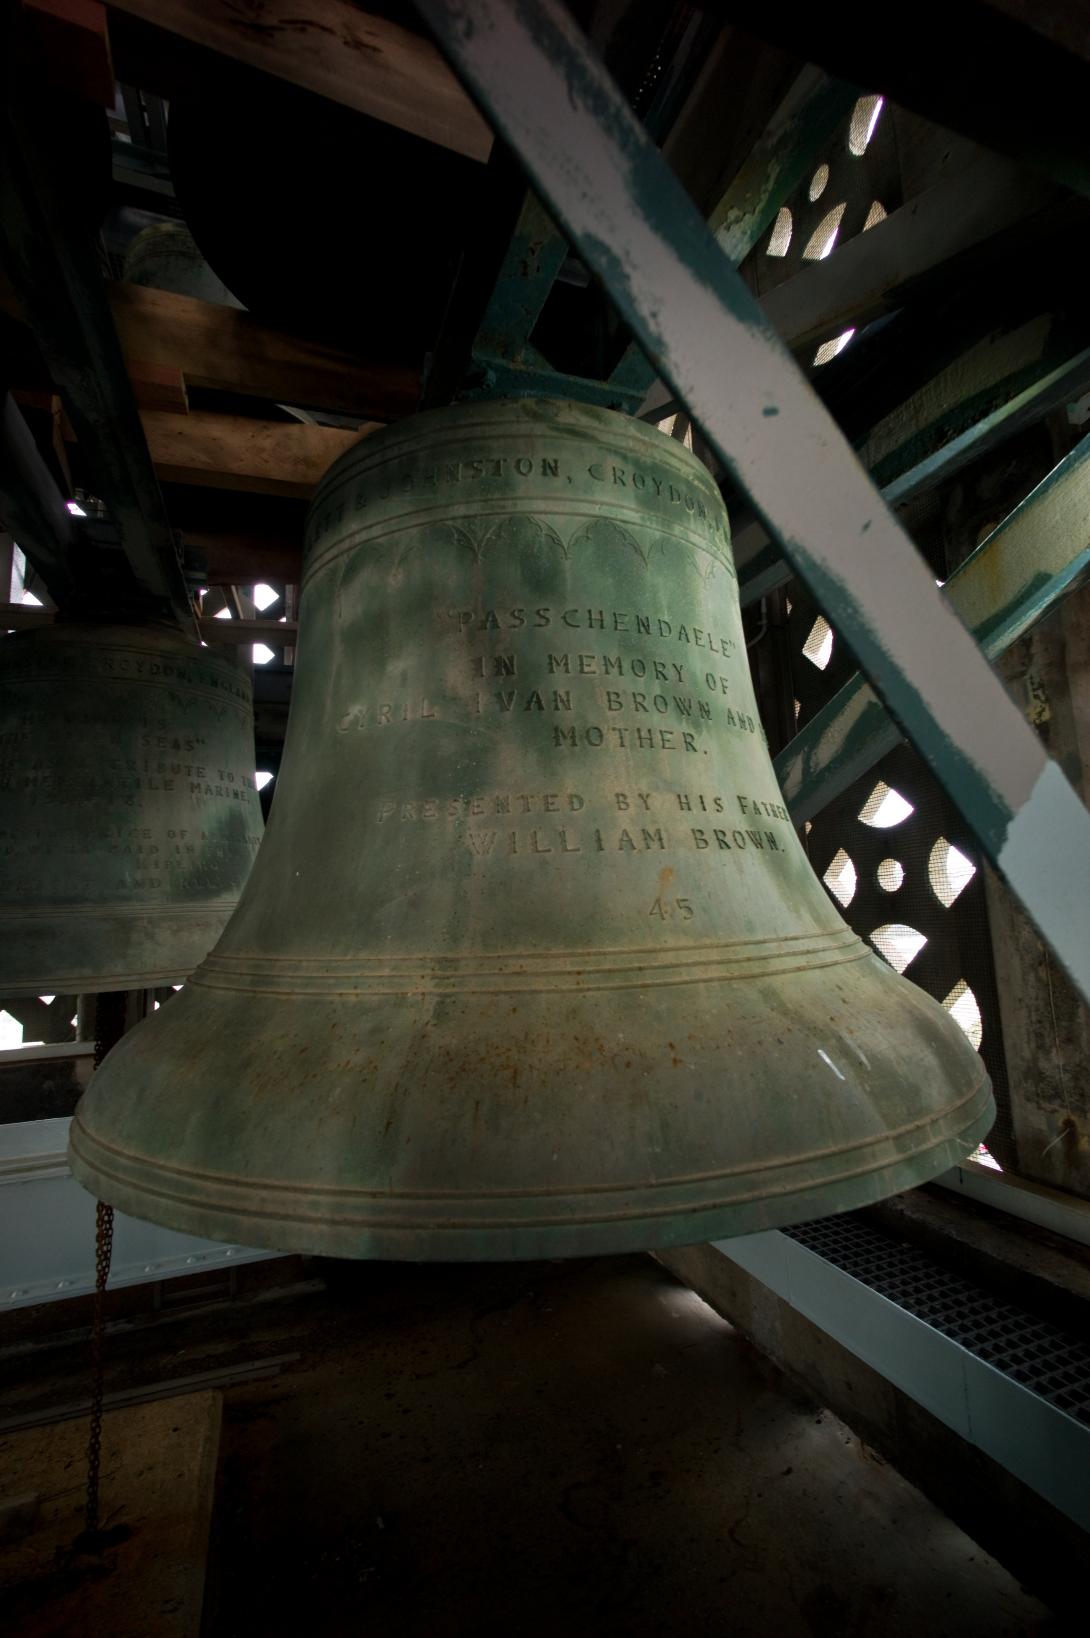 Image of Passchendaele bell